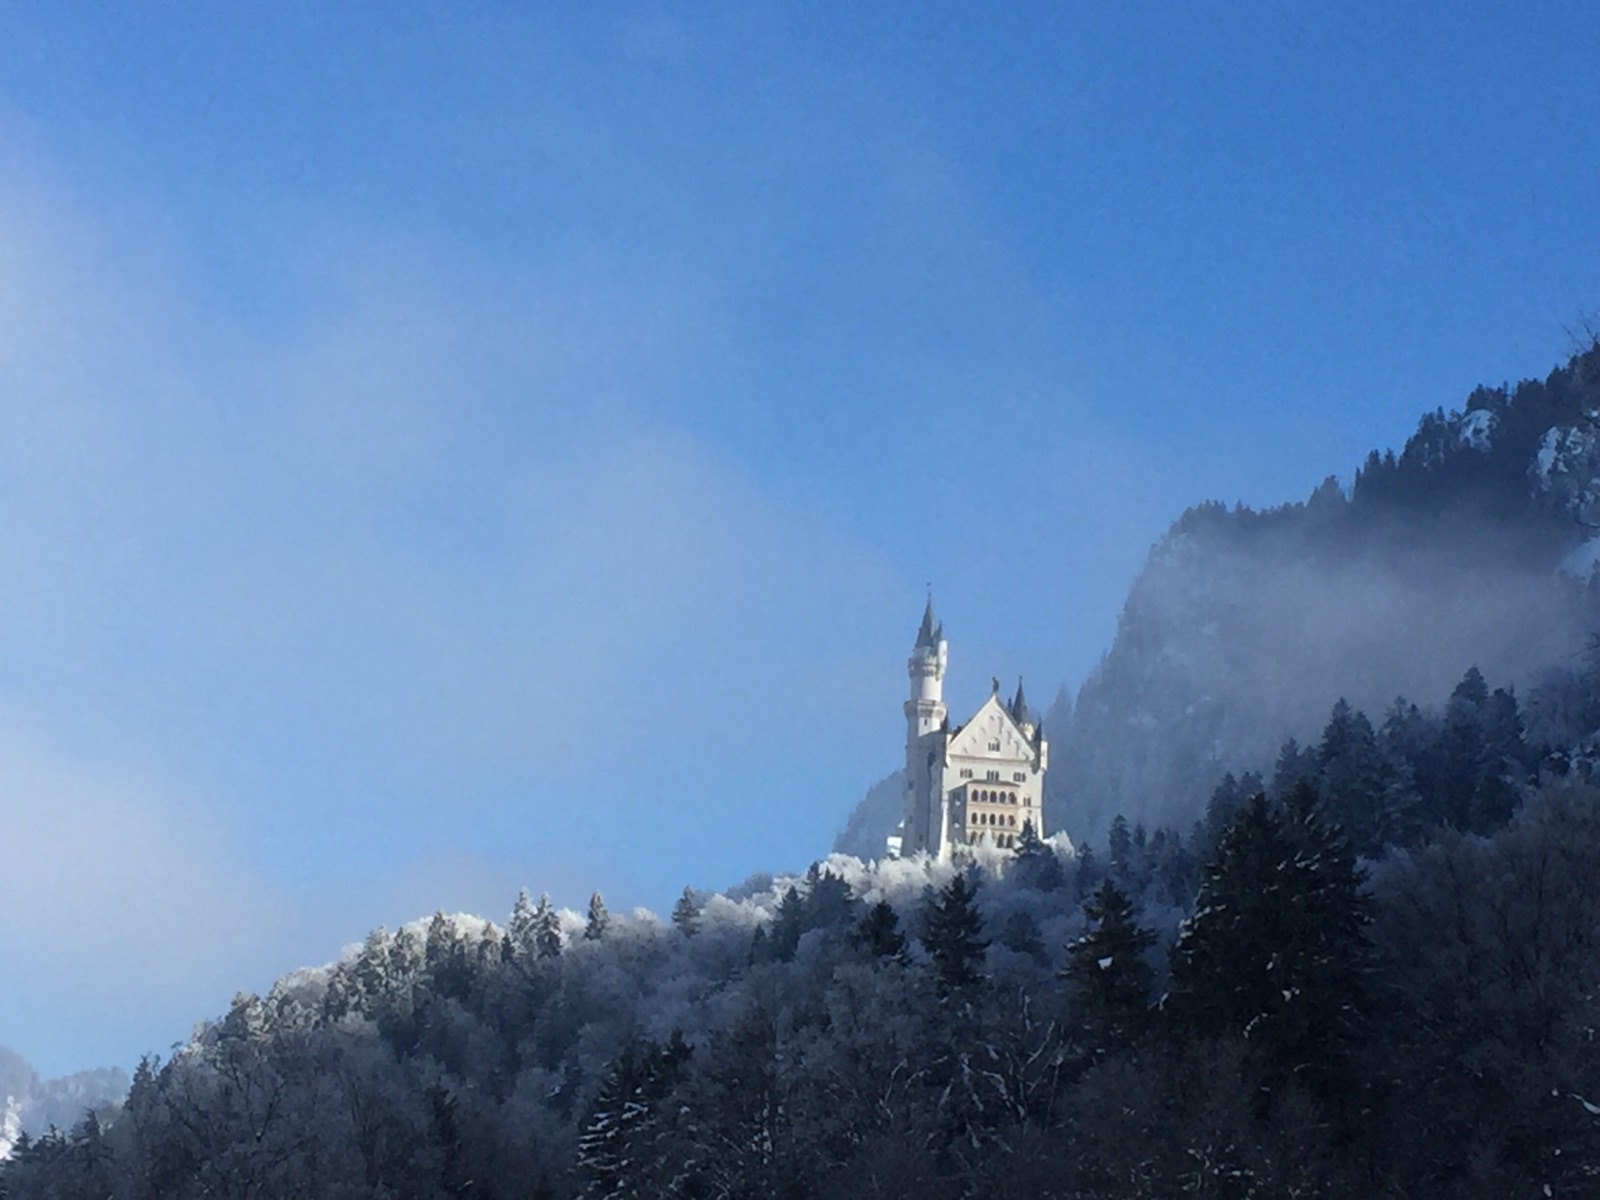 早上雾蒙蒙的只能看到影子，等参观完城堡内部下山时，阳光照散了晨雾，露出